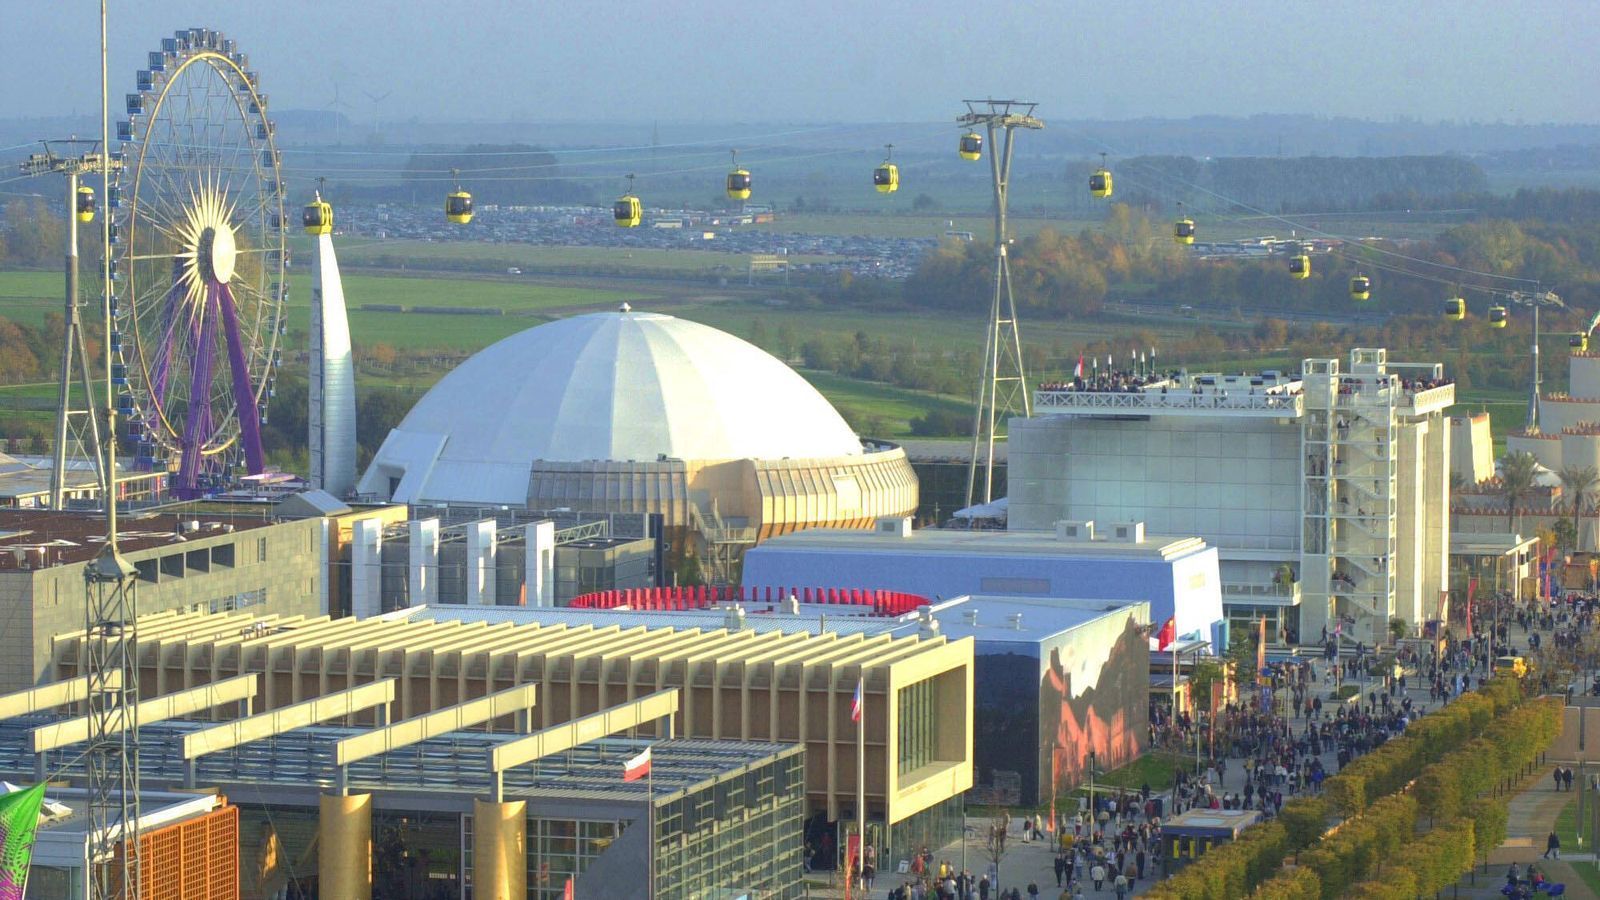 
                <strong>Die Expo findet in Hannover statt</strong><br>
                Die Weltausstellung "ExPo" findet in jenem Jahr in Hannover statt. Insgesamt 18 Millionen Besucher kommen in die Landeshauptstadt Niedersachens und besuchen die Pavillons von 155 Ländern.
              